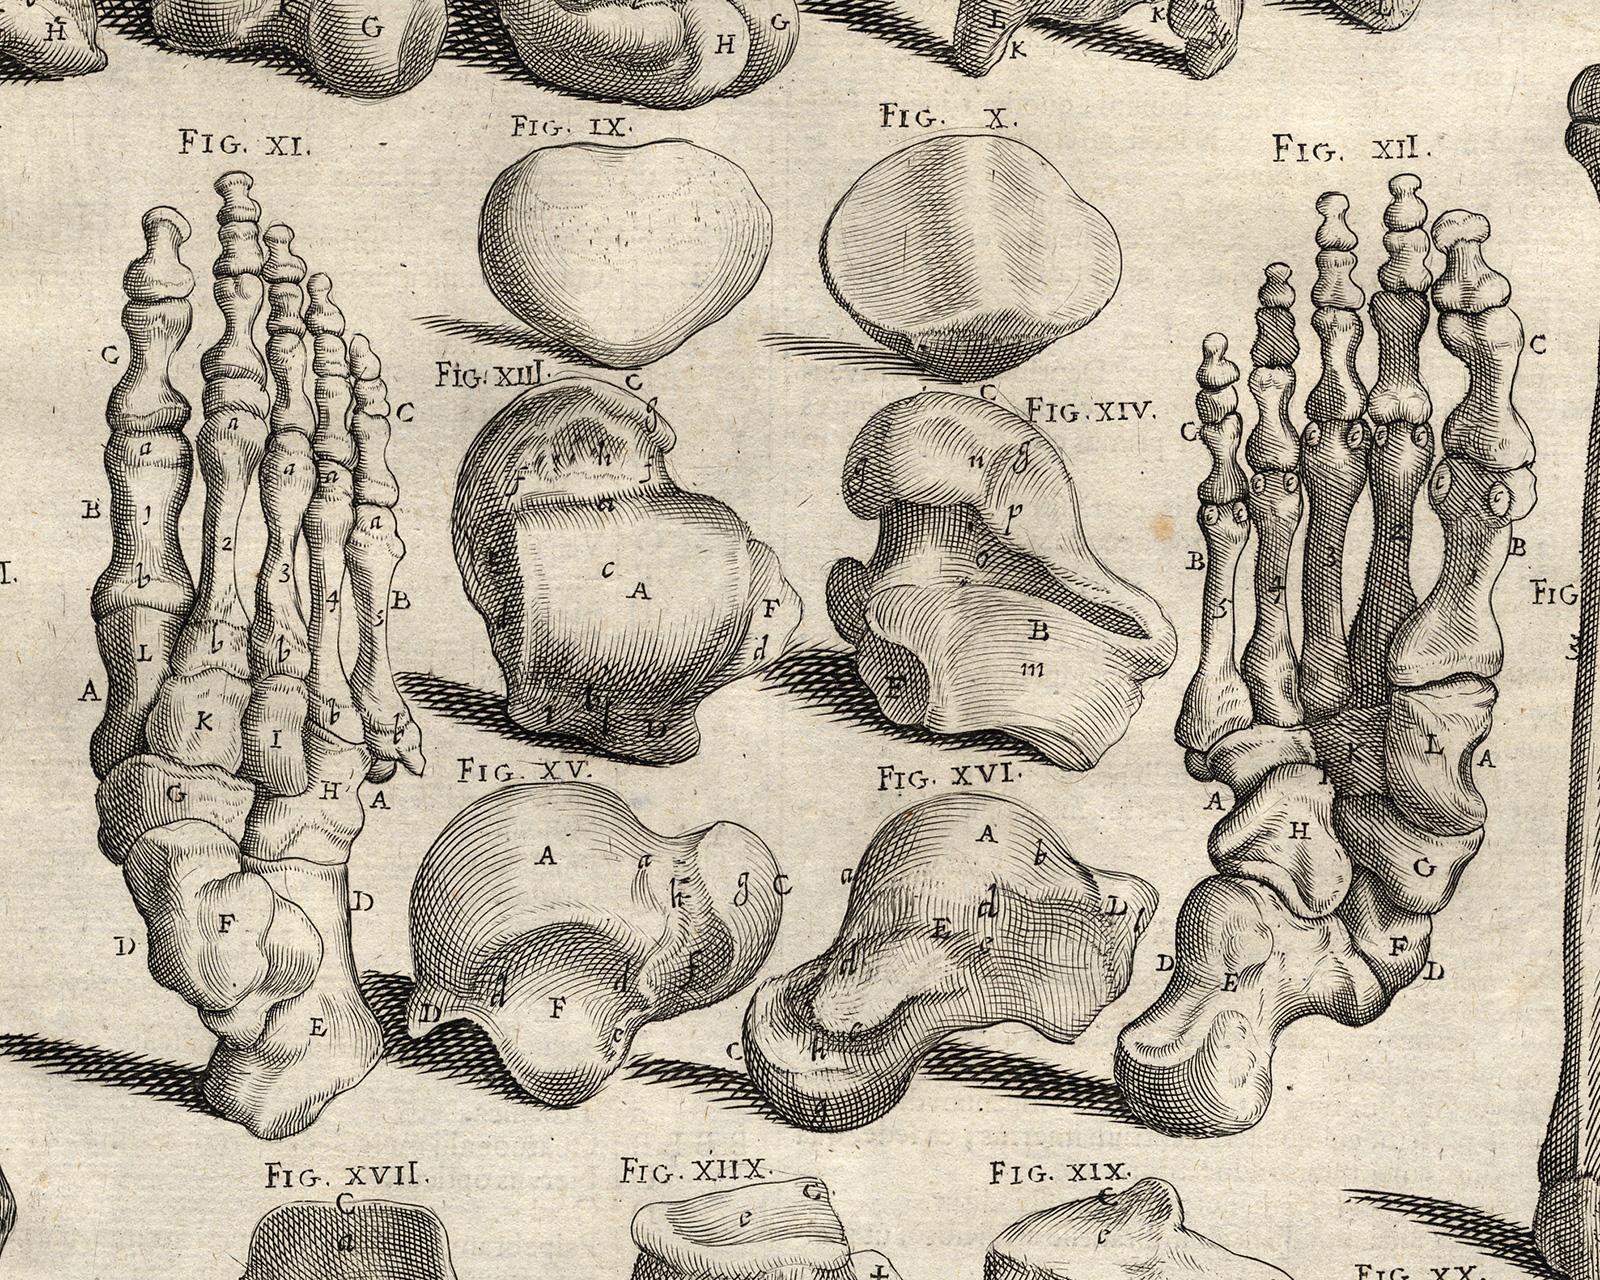 Anatomical print - bones of legs, feet, etc. - by Spigelius - Engraving - 17th c - Old Masters Print by Adrianus Spigelius